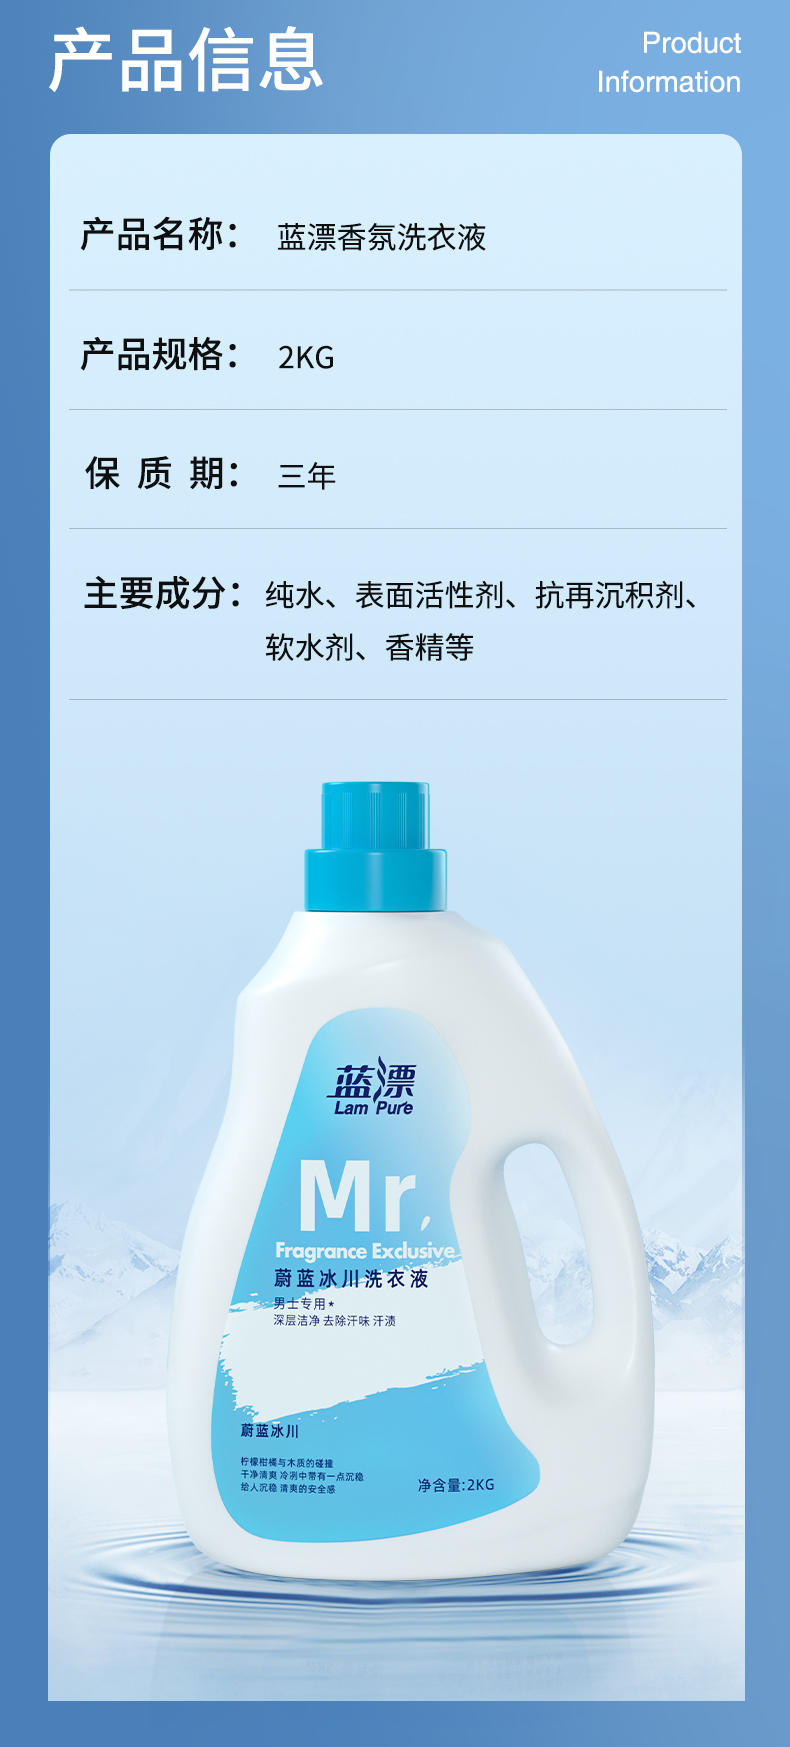 LP-368830蓝漂香氛洗衣液*1瓶装-男士专用